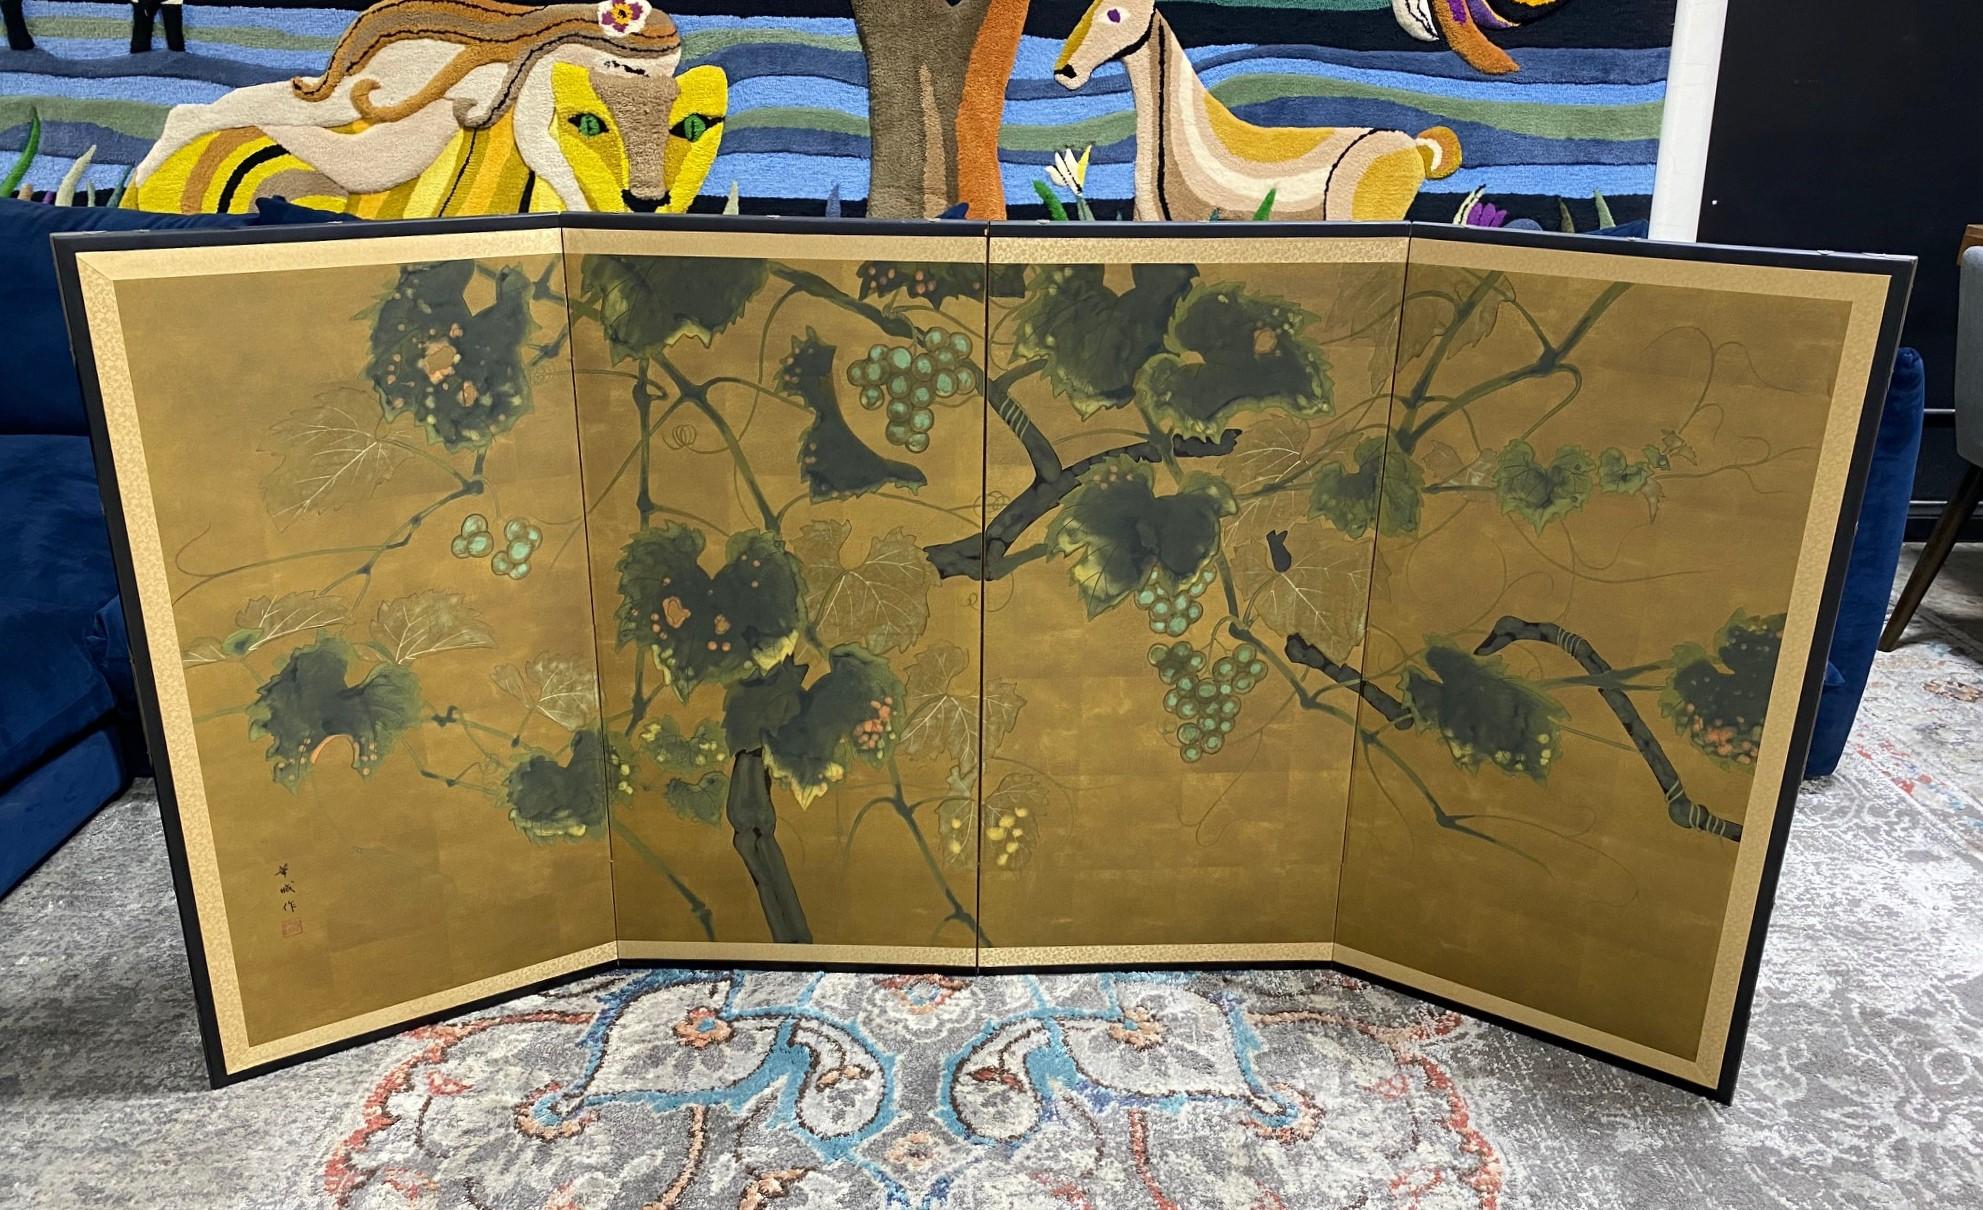 Ein wahrhaft prächtiger vierteiliger japanischer Byobu-Faltwandschirm, der eine Naturszene mit einem blühenden Lotusbaum darstellt. Die subtilen, aber satten Farben, das Blattgold und die schönen handgemalten Details des Baumes und der hängenden